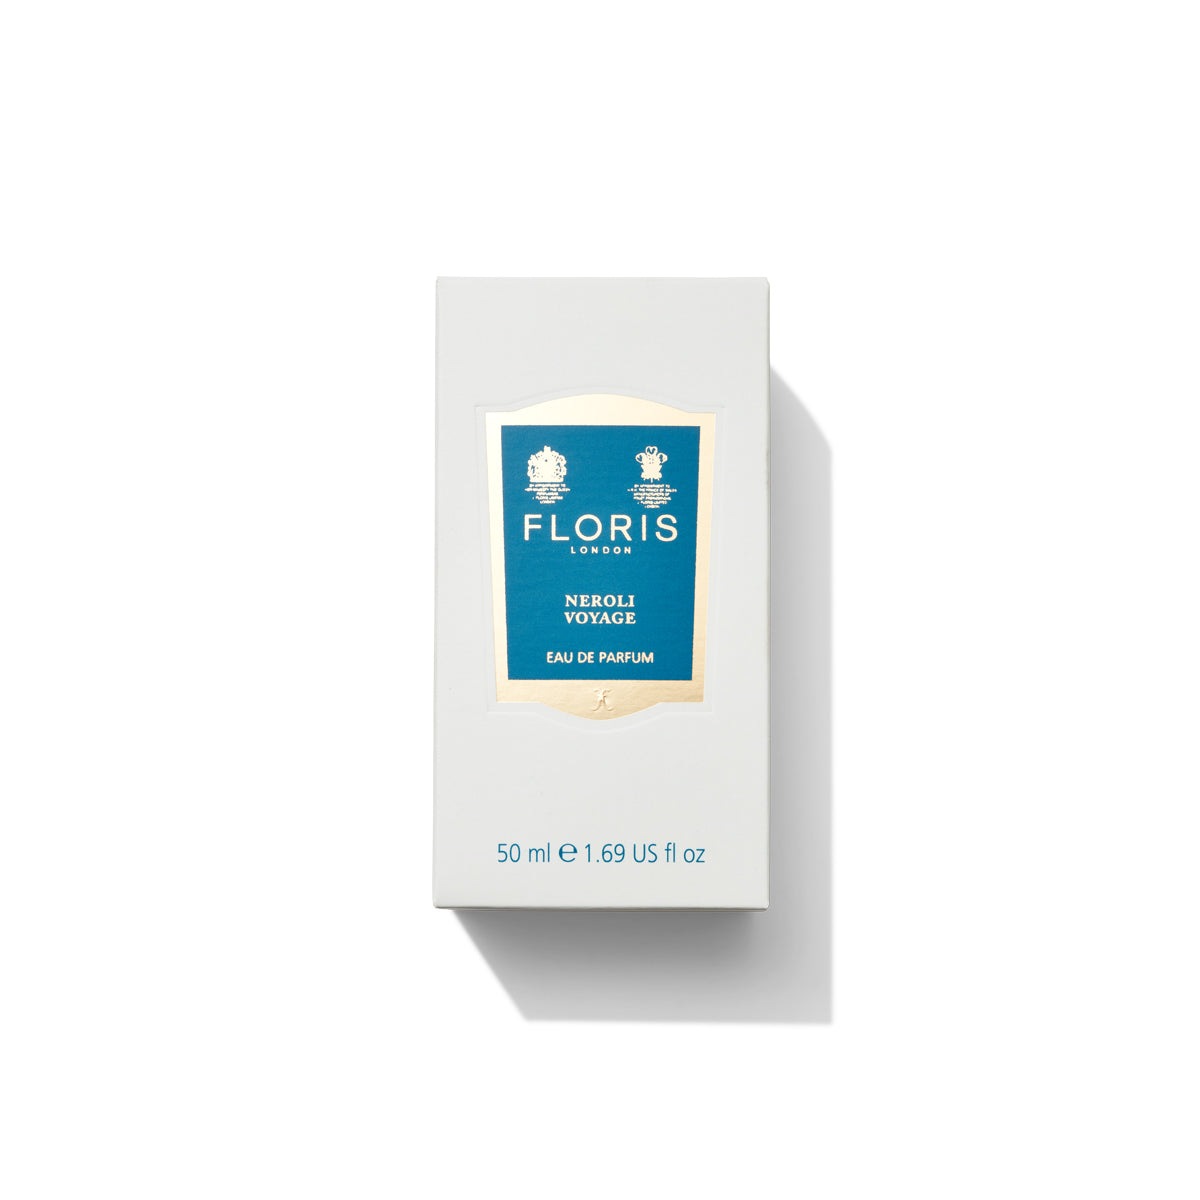 50ml box for neroli voyage eau de parfum from floris london, it features a blue label on a grey box